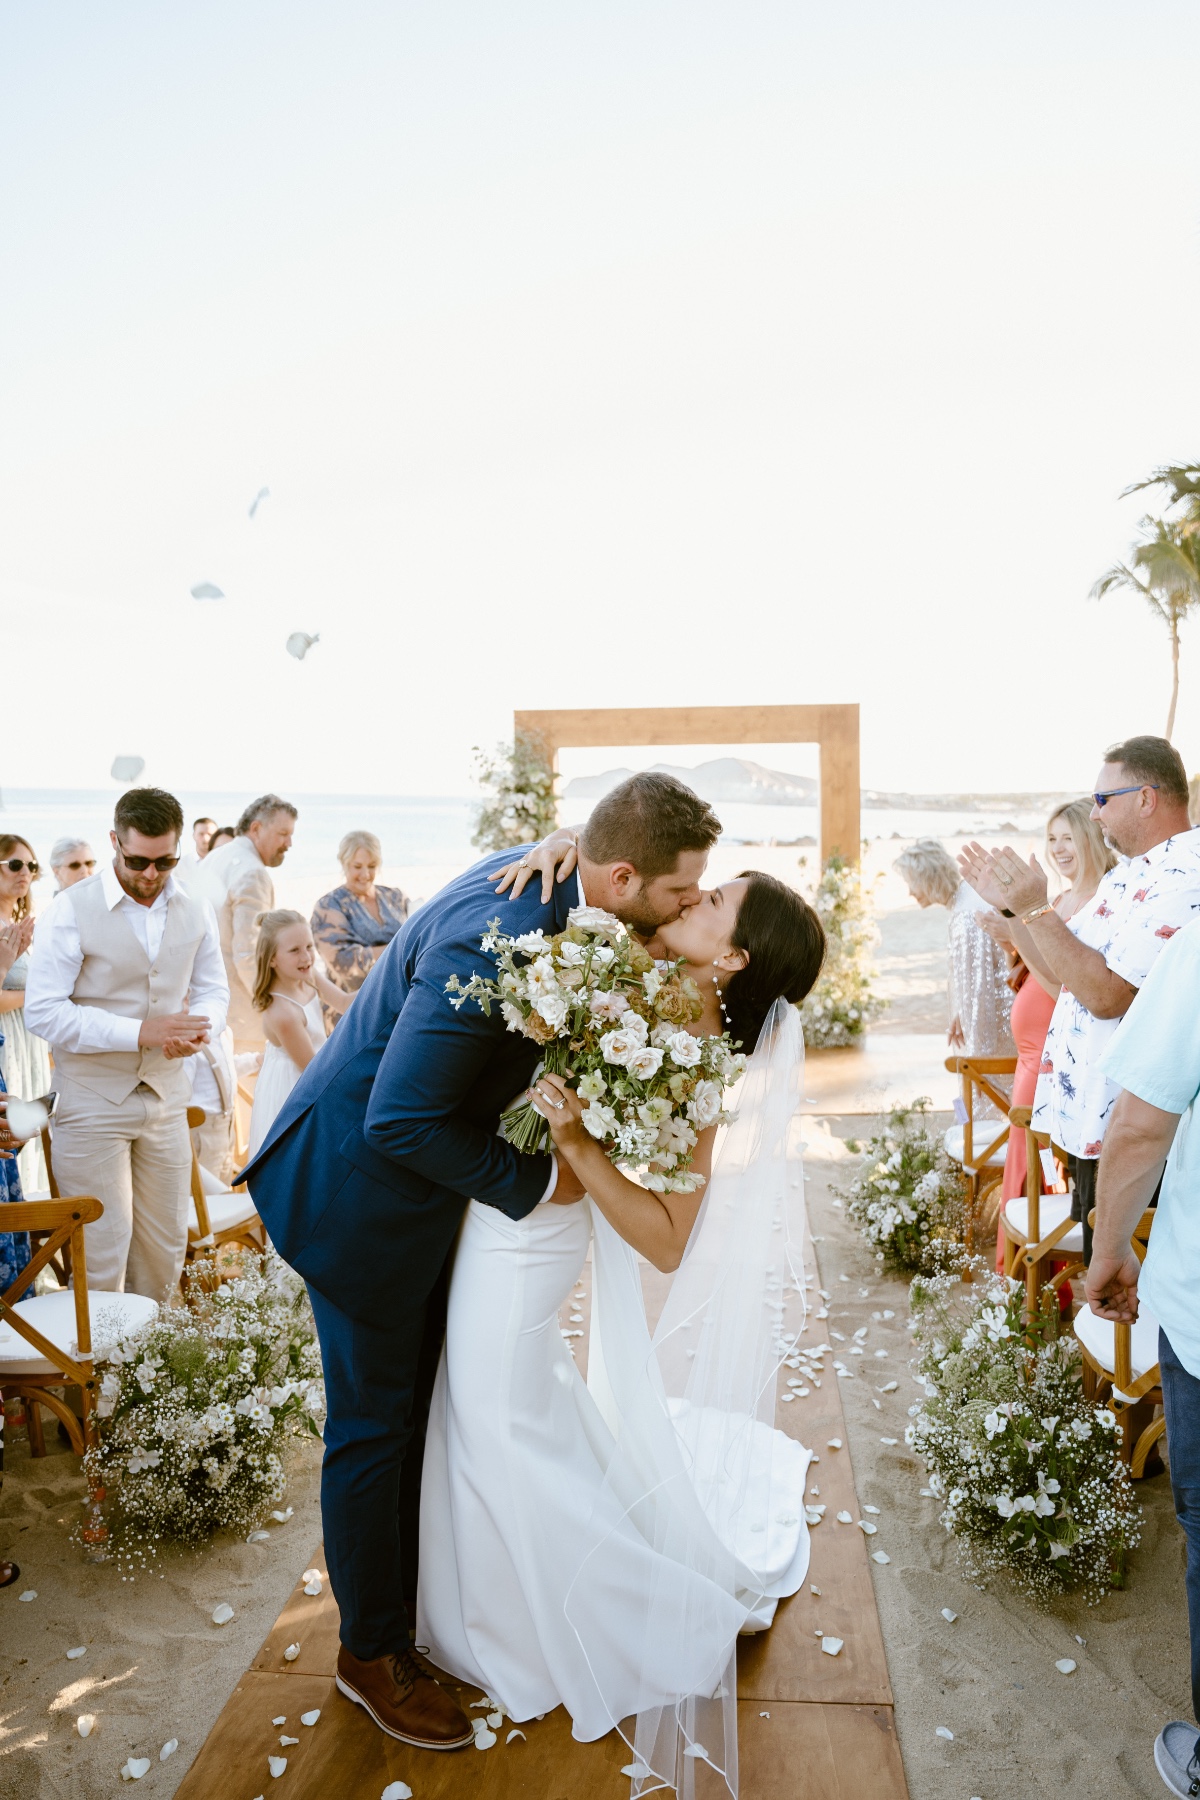 how to create a wedding aisle on the beach